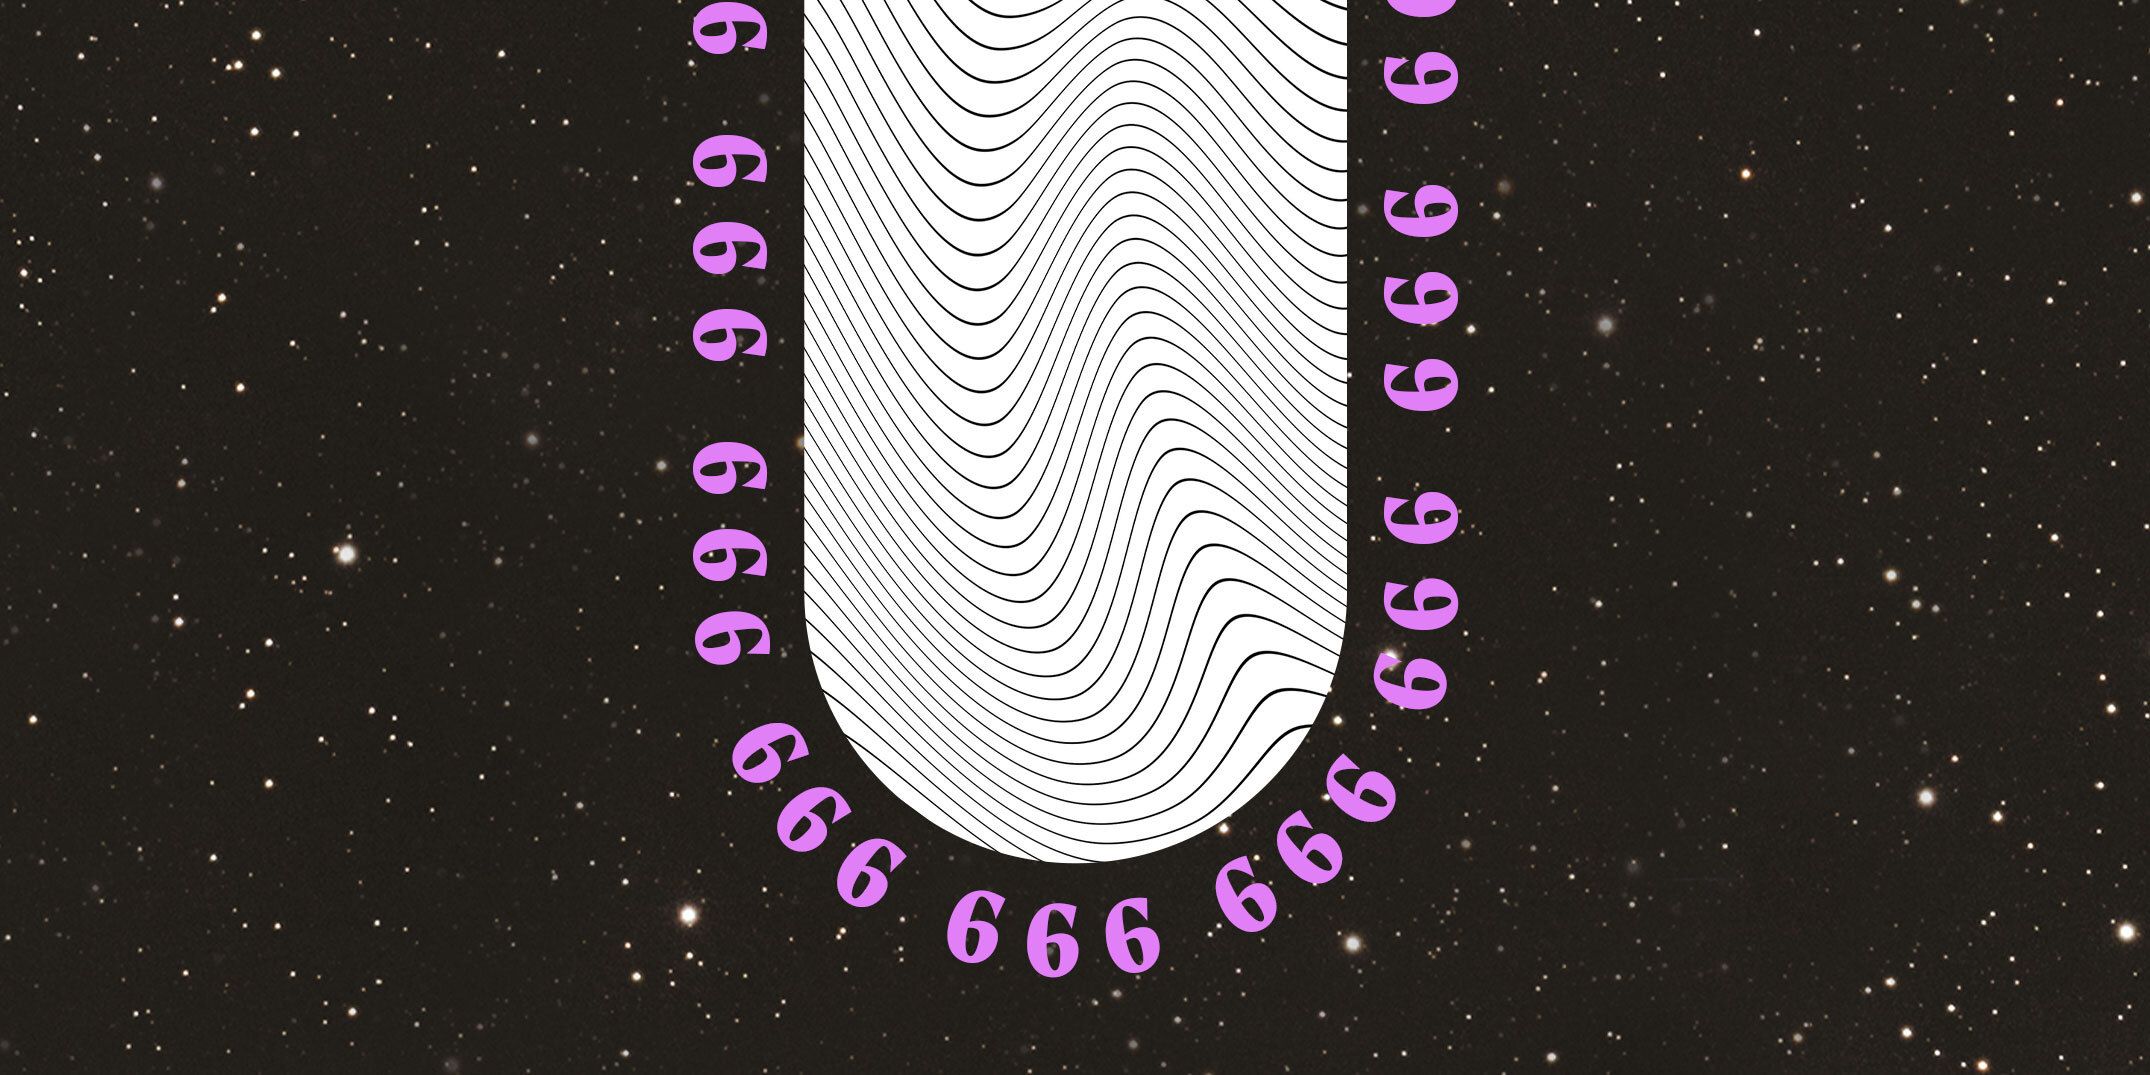 666: significado angélico y numerología